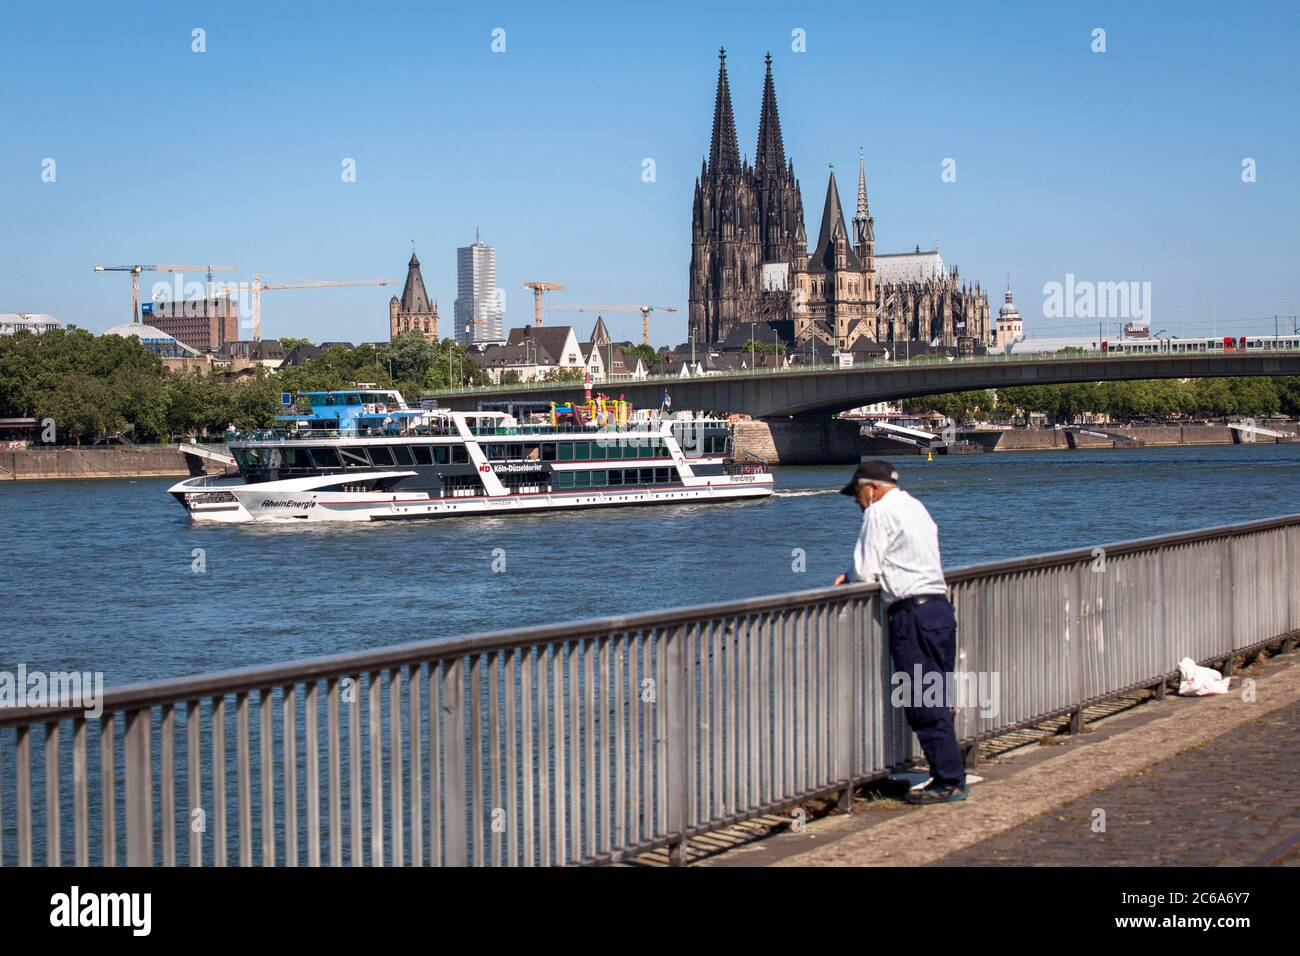 Der Rhein, die Altstadt mit dem Turm der historischen Rathaus, die romanische Kirche Groß St. Martin und die gotische Kathedrale, Stockfoto